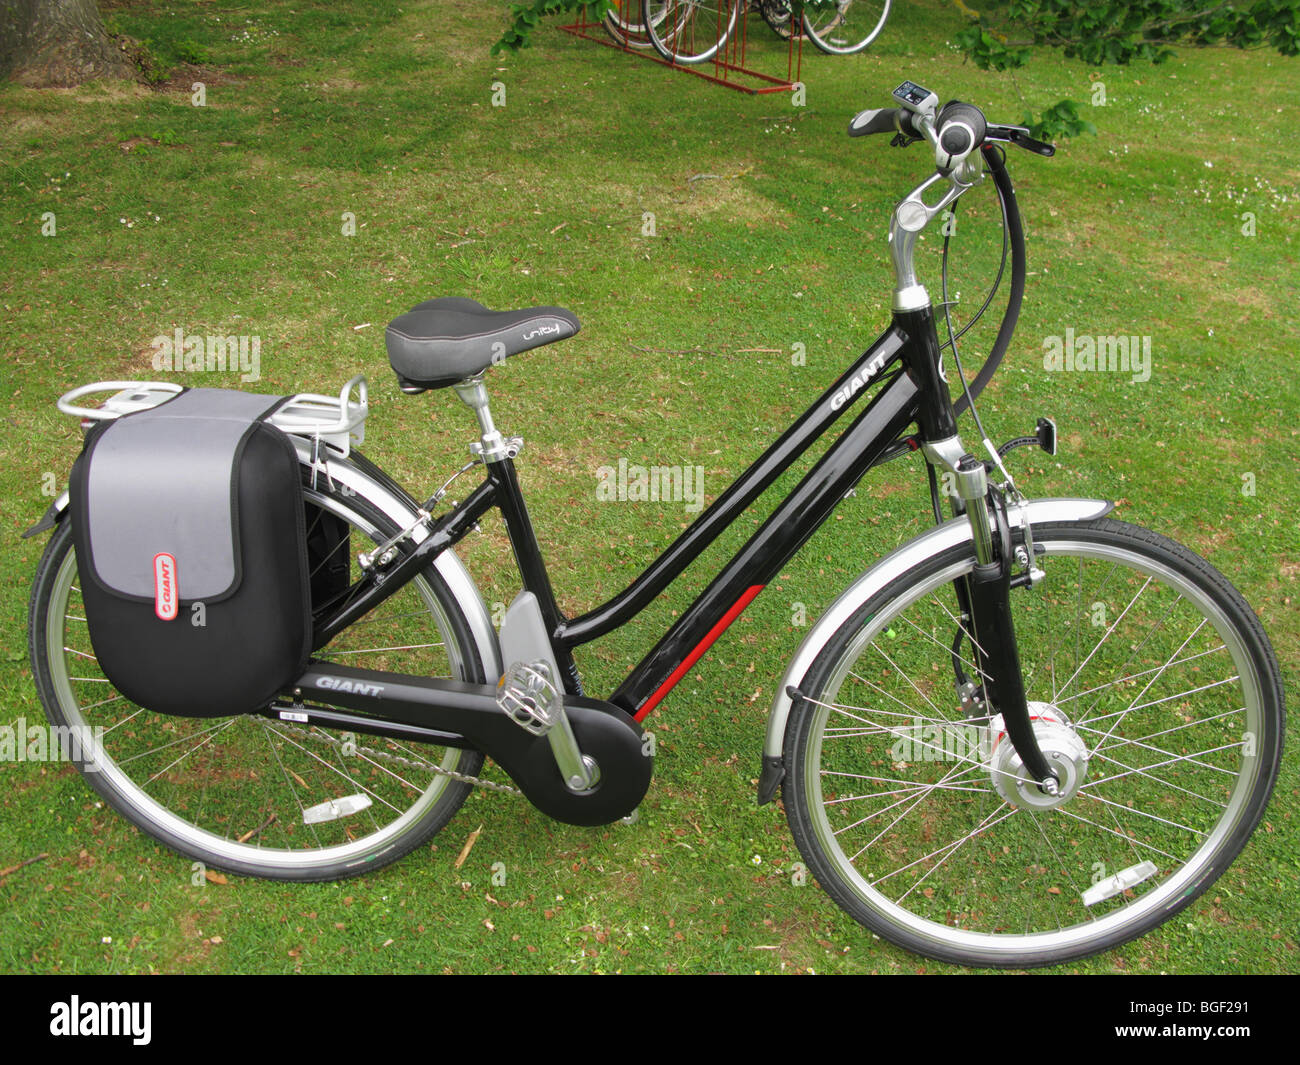 La marque Giant Twist Freedom CS Lite vélo électrique Photo Stock - Alamy